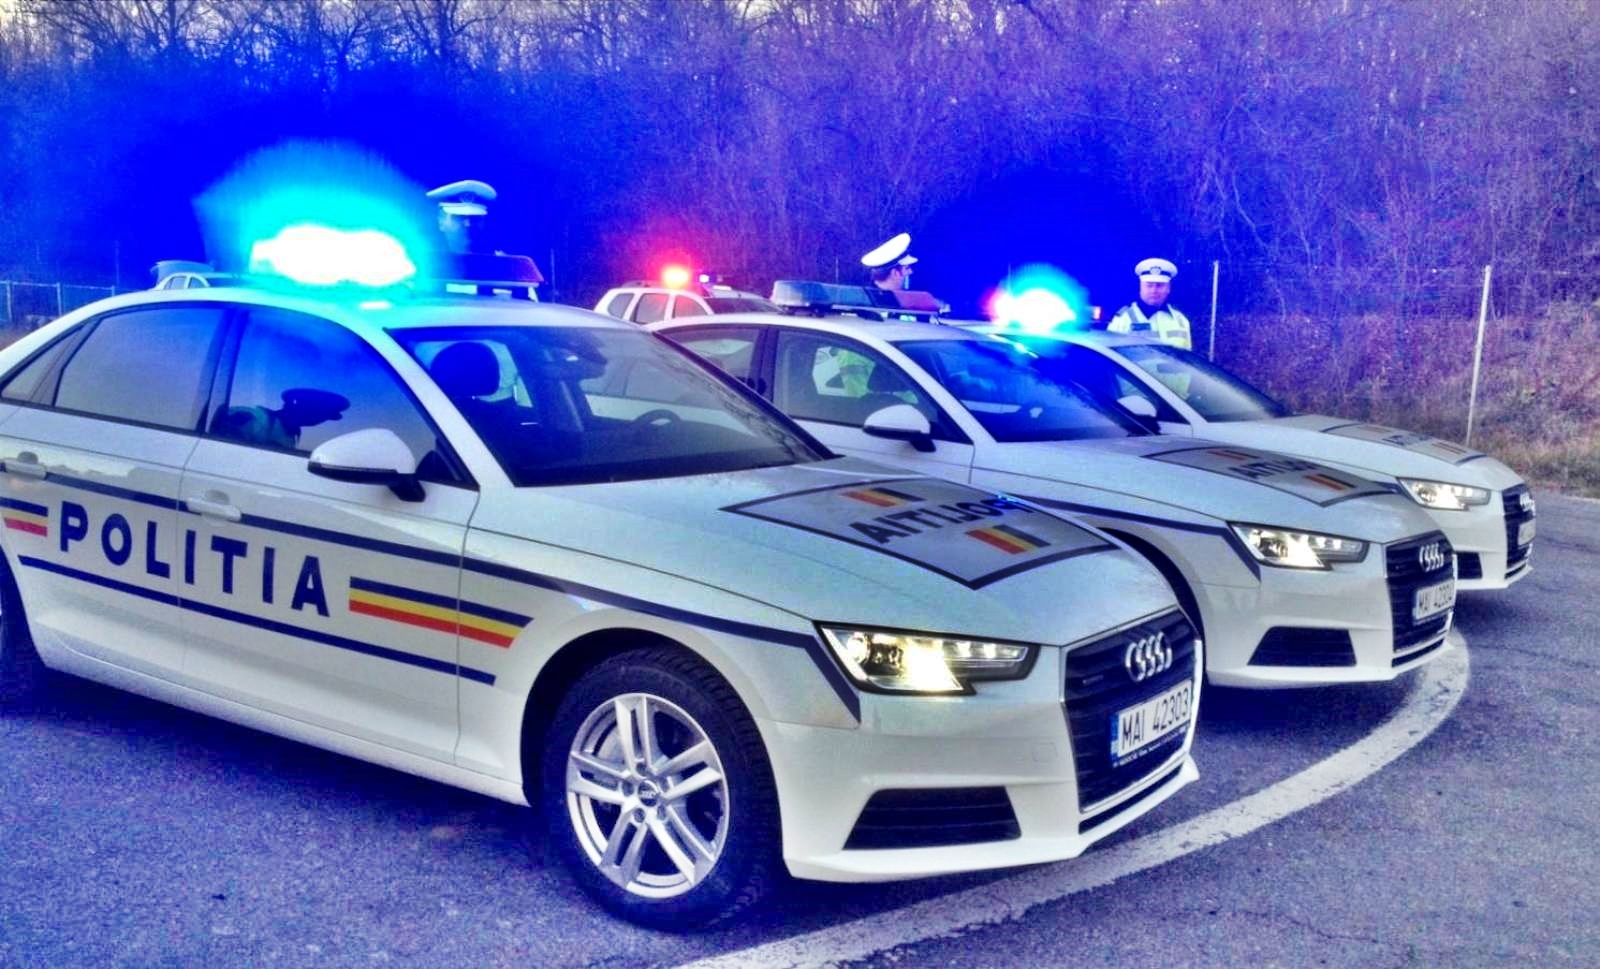 Atención de la policía rumana Millones de rumanos